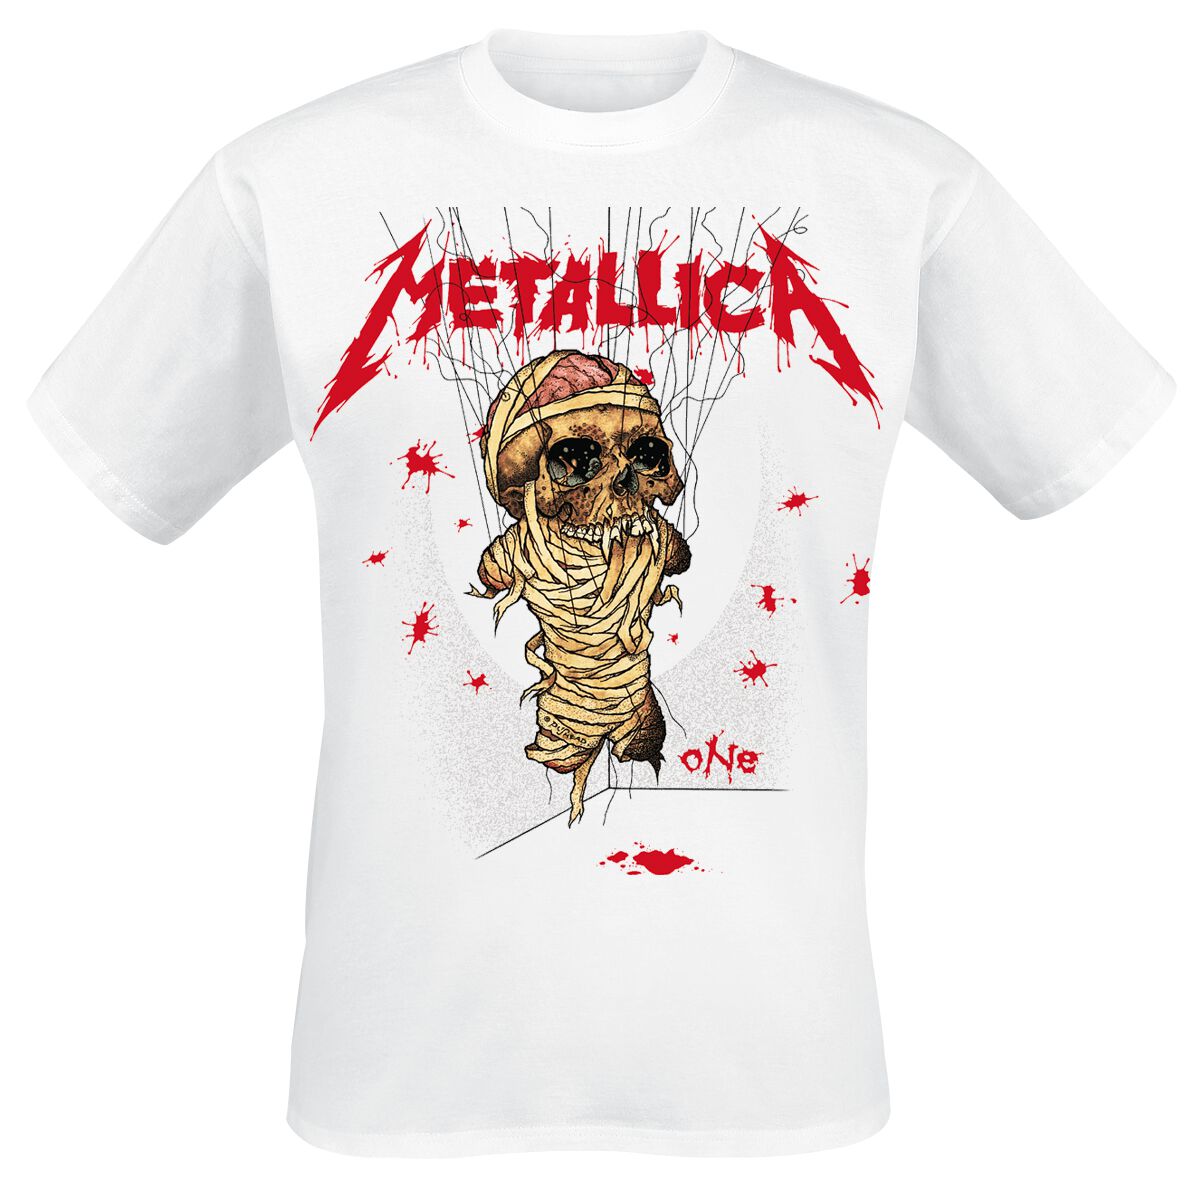 Metallica T-Shirt - One Landmine - S bis 3XL - für Männer - Größe XXL - weiß  - Lizenziertes Merchandise!